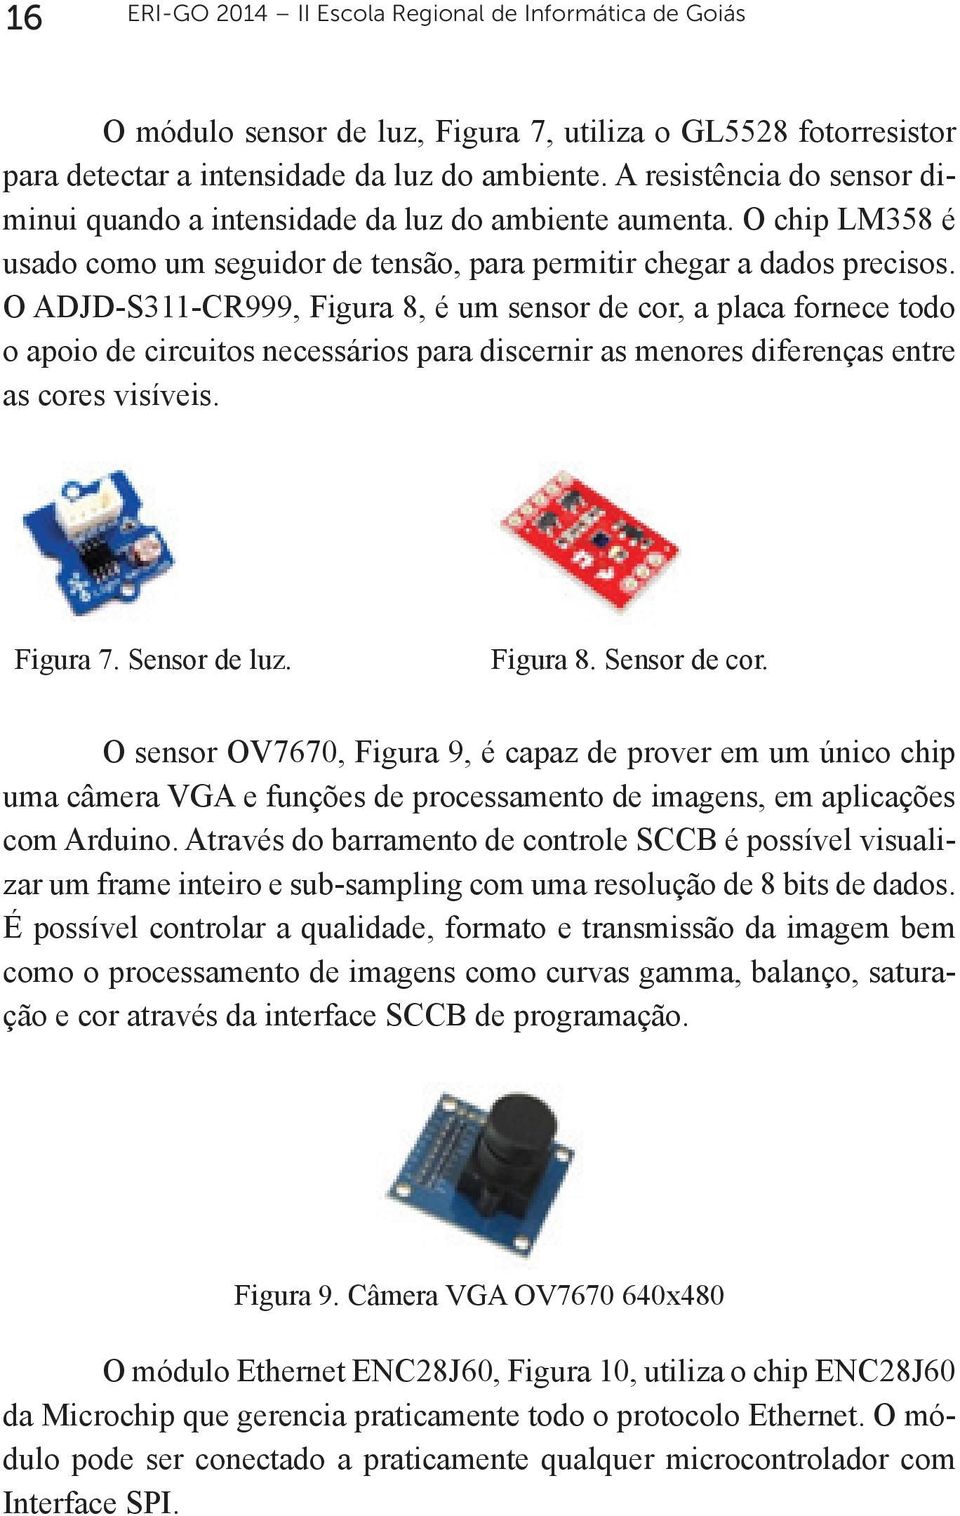 ADJD-S311-CR999, Figura 8, é um sensor de cor, a placa fornece todo o apoio de circuitos necessários para discernir as menores diferenças entre as cores visíveis. Figura 7. Sensor de luz. Figura 8. Sensor de cor.